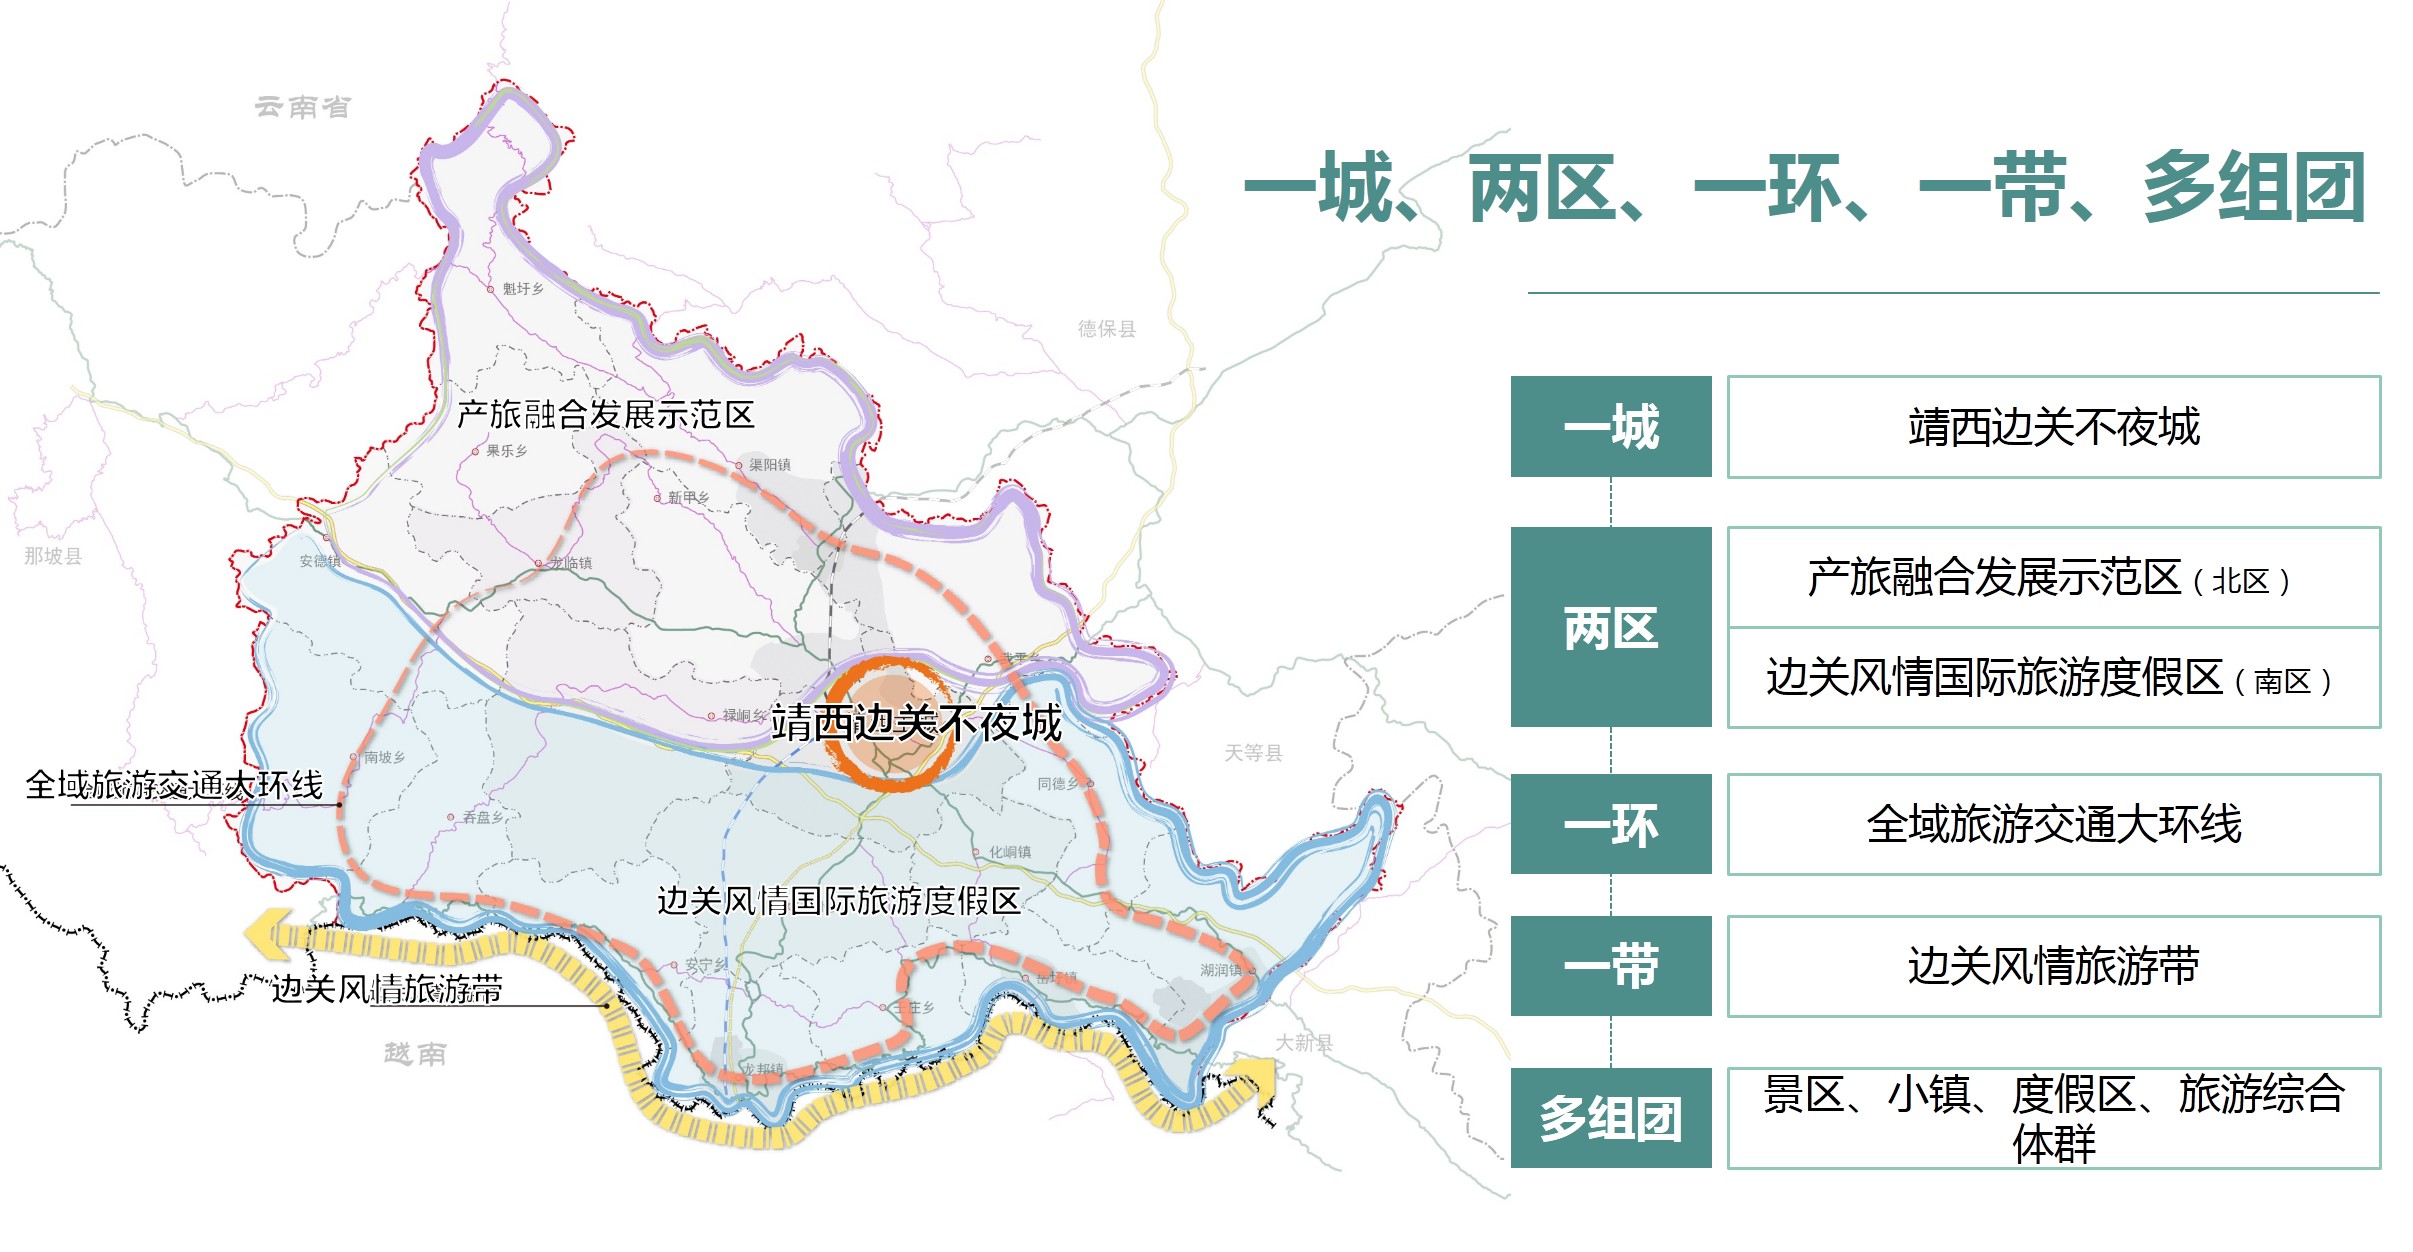 广西靖西市全域旅游发展规划(含近三年行动计划)及重点项目策划